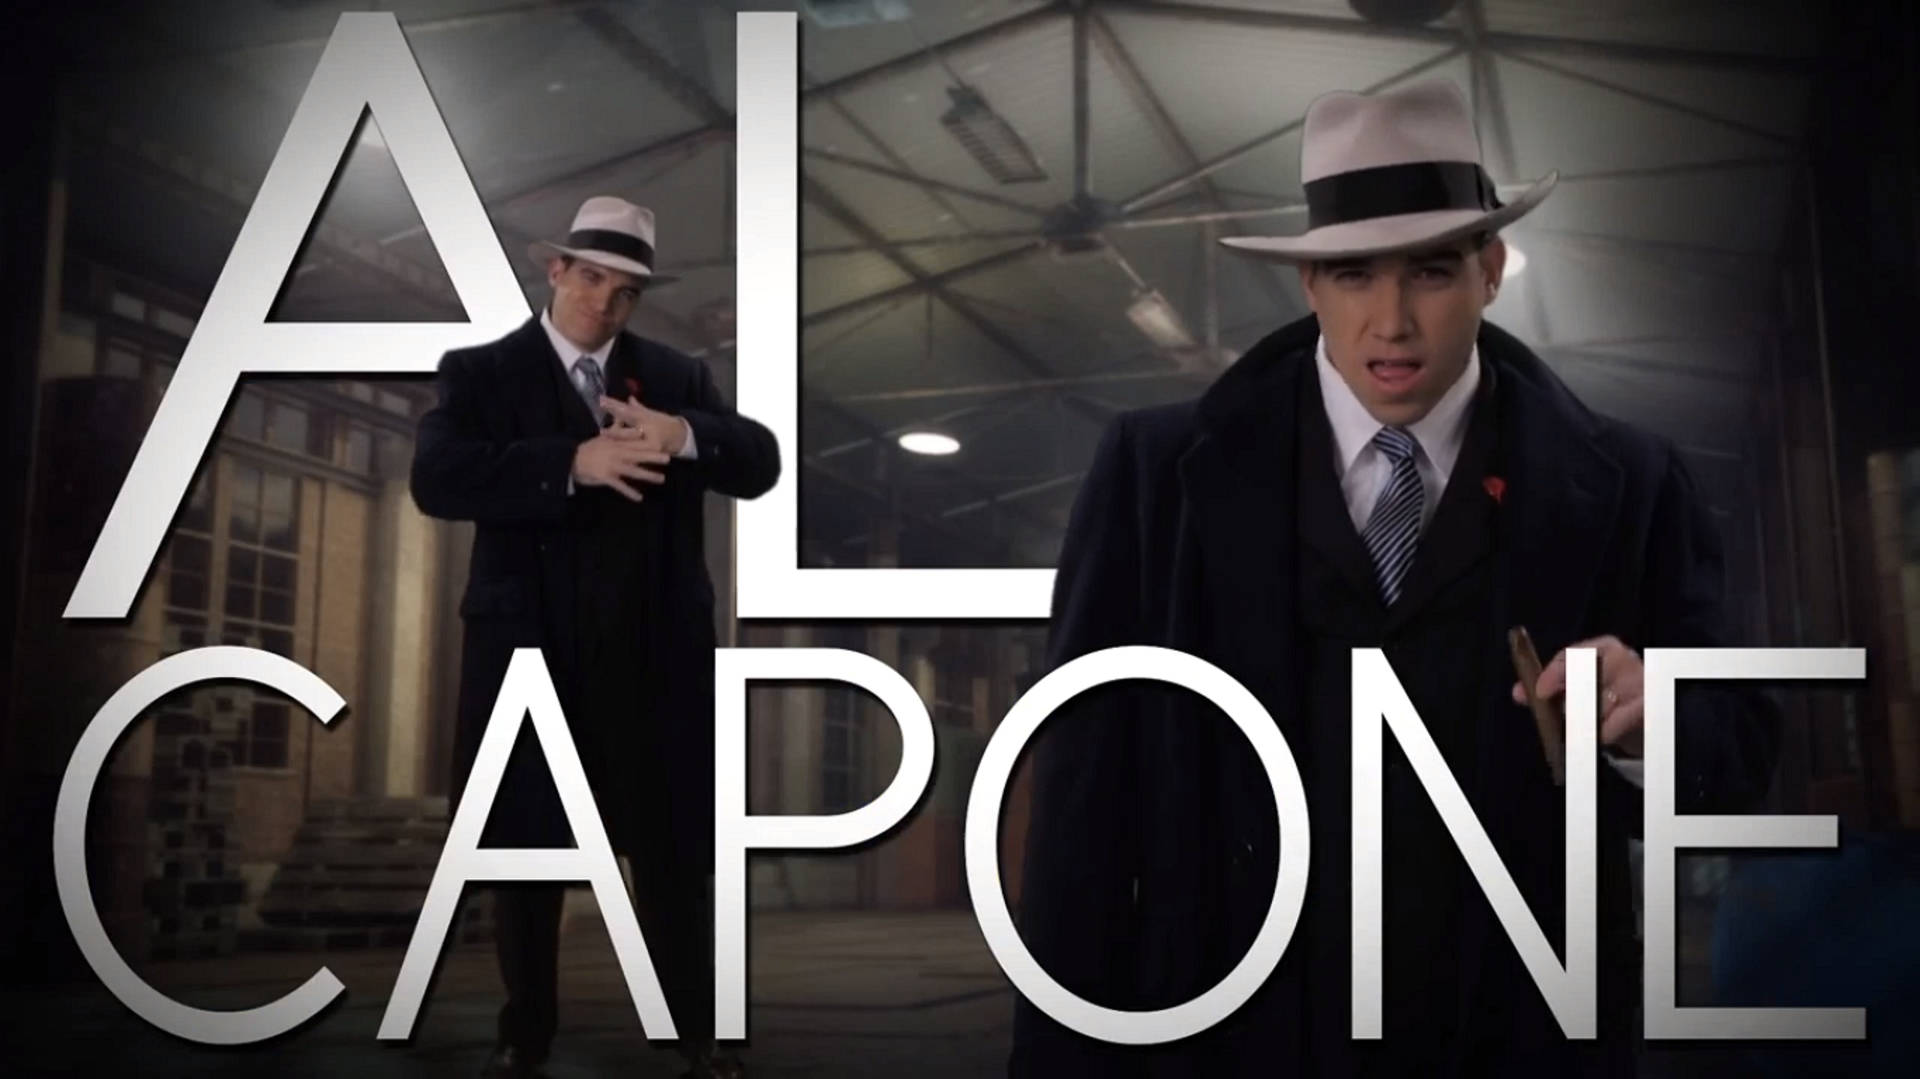 Mafia Boss Al Capone Poster Background